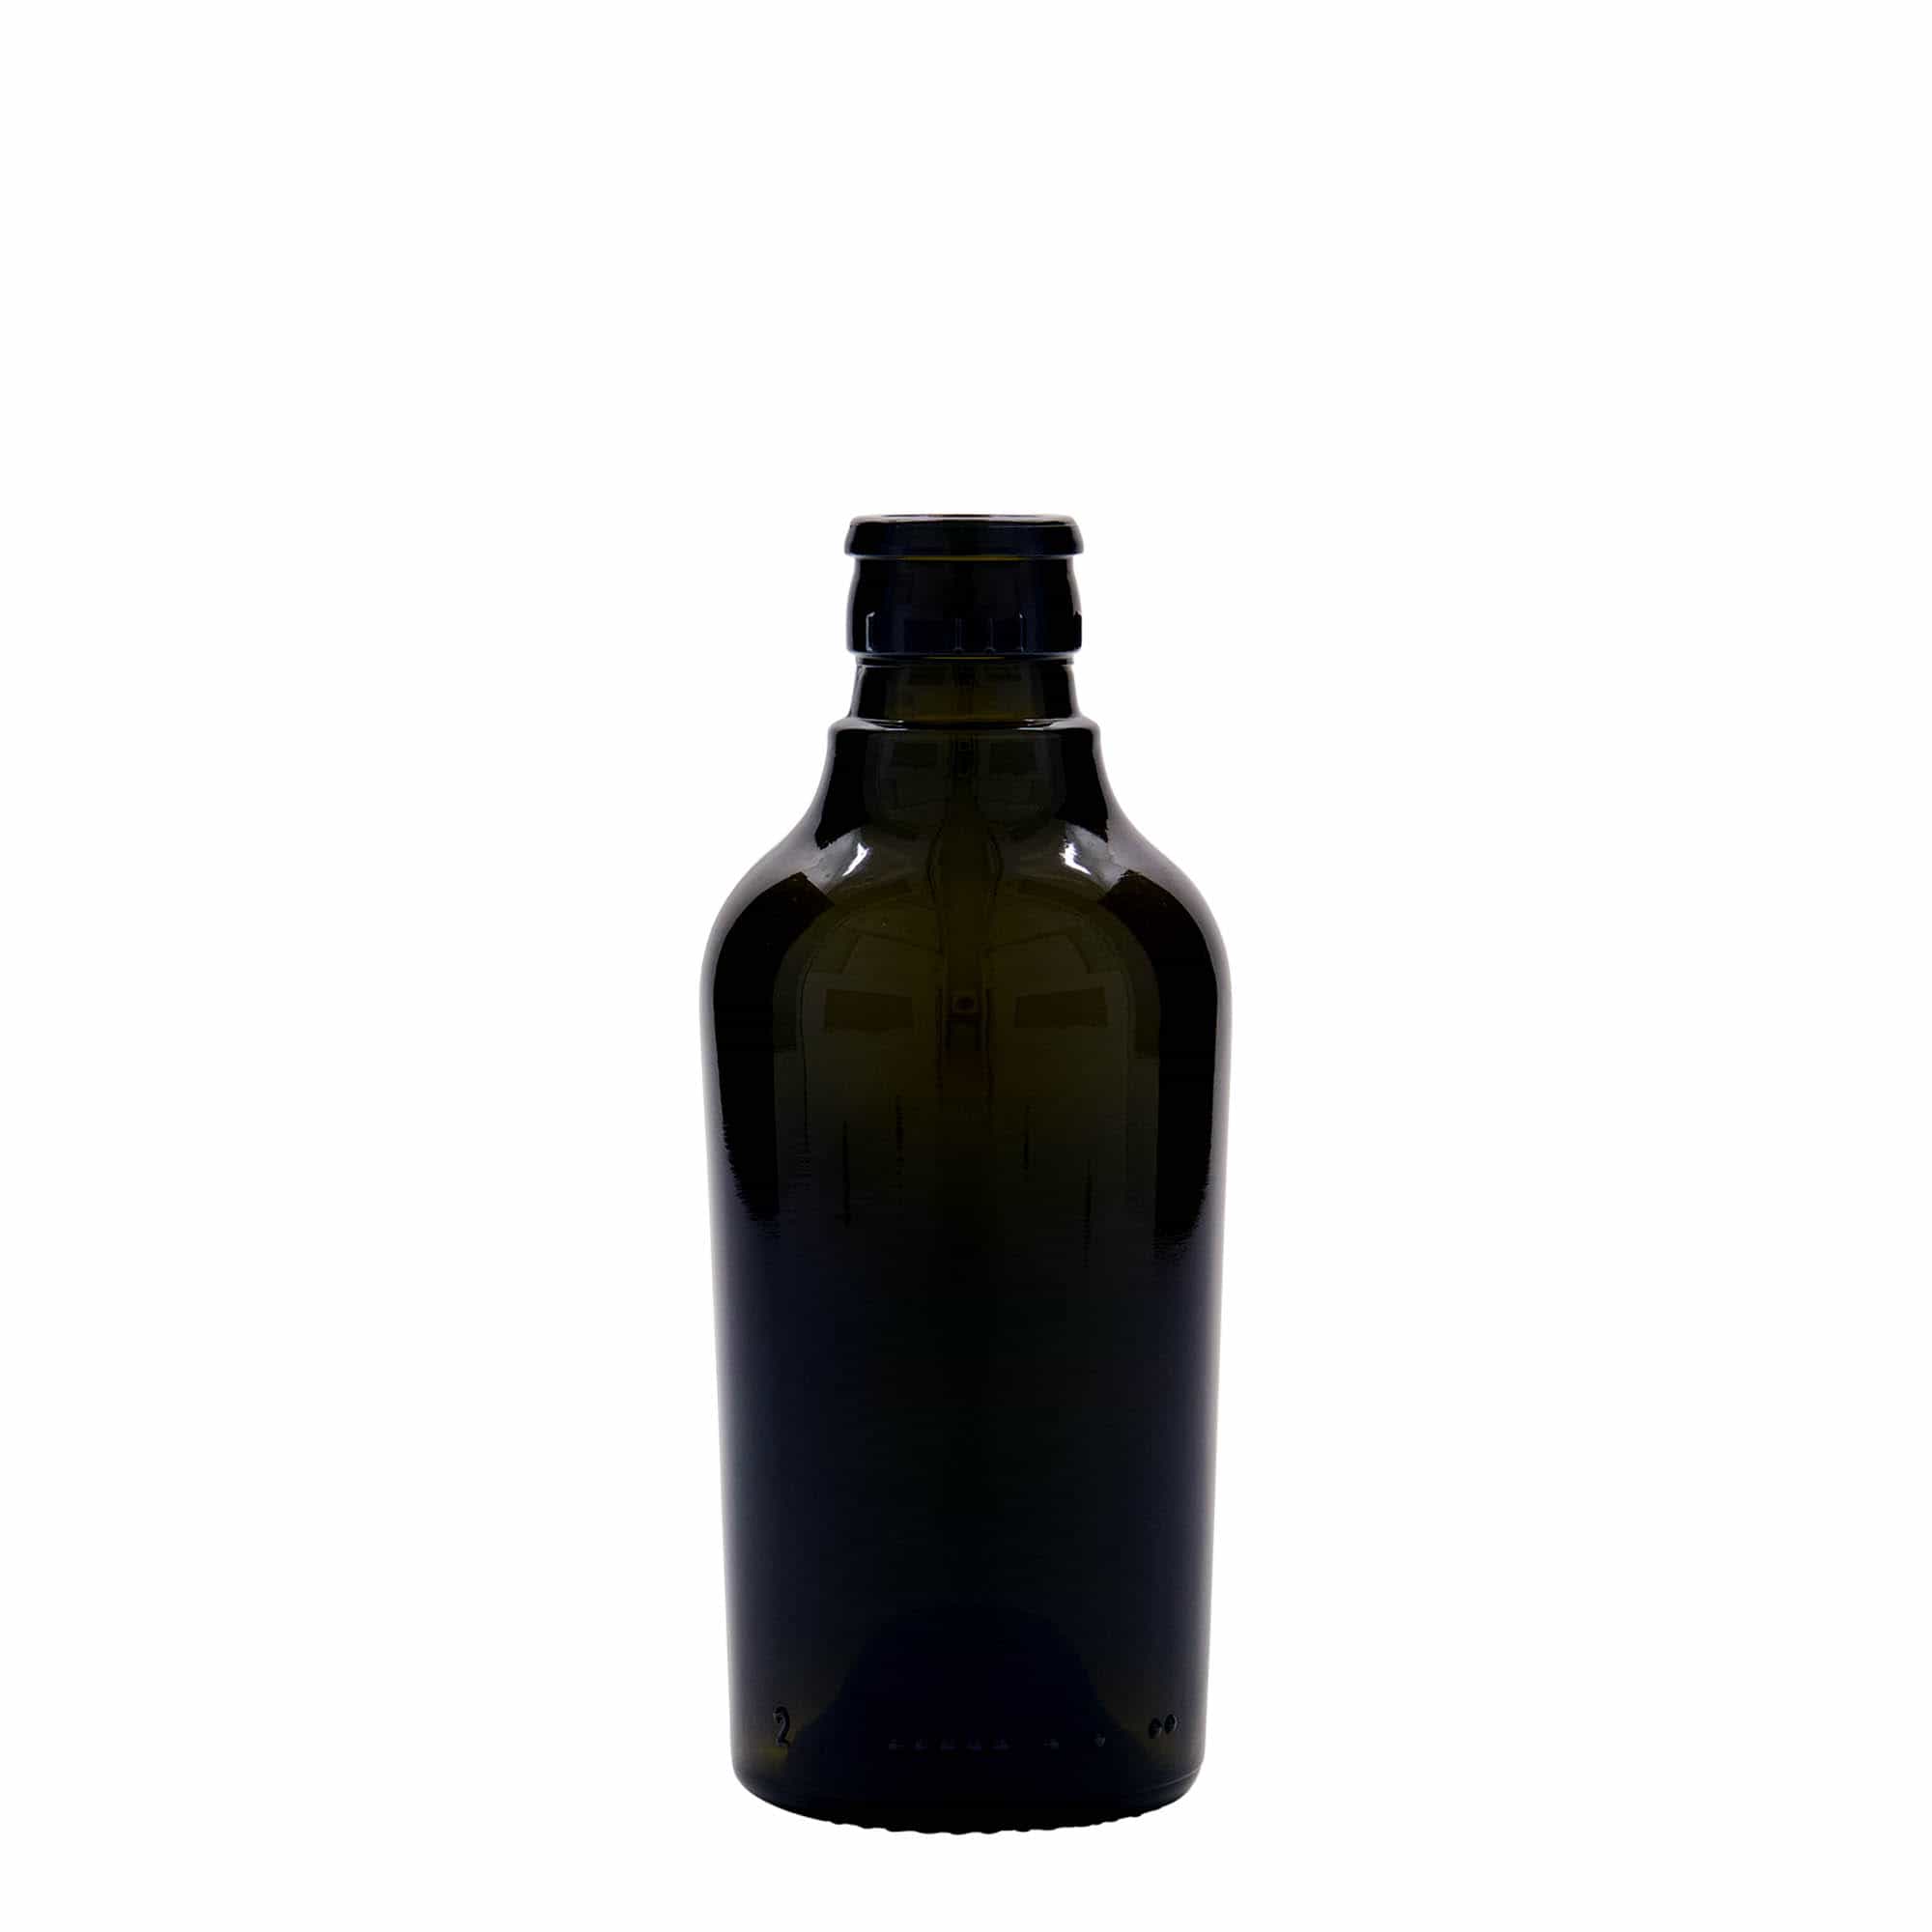 250 ml vinäger-/oljeflaska 'Oleum', glas, antikgrön, mynning: DOP